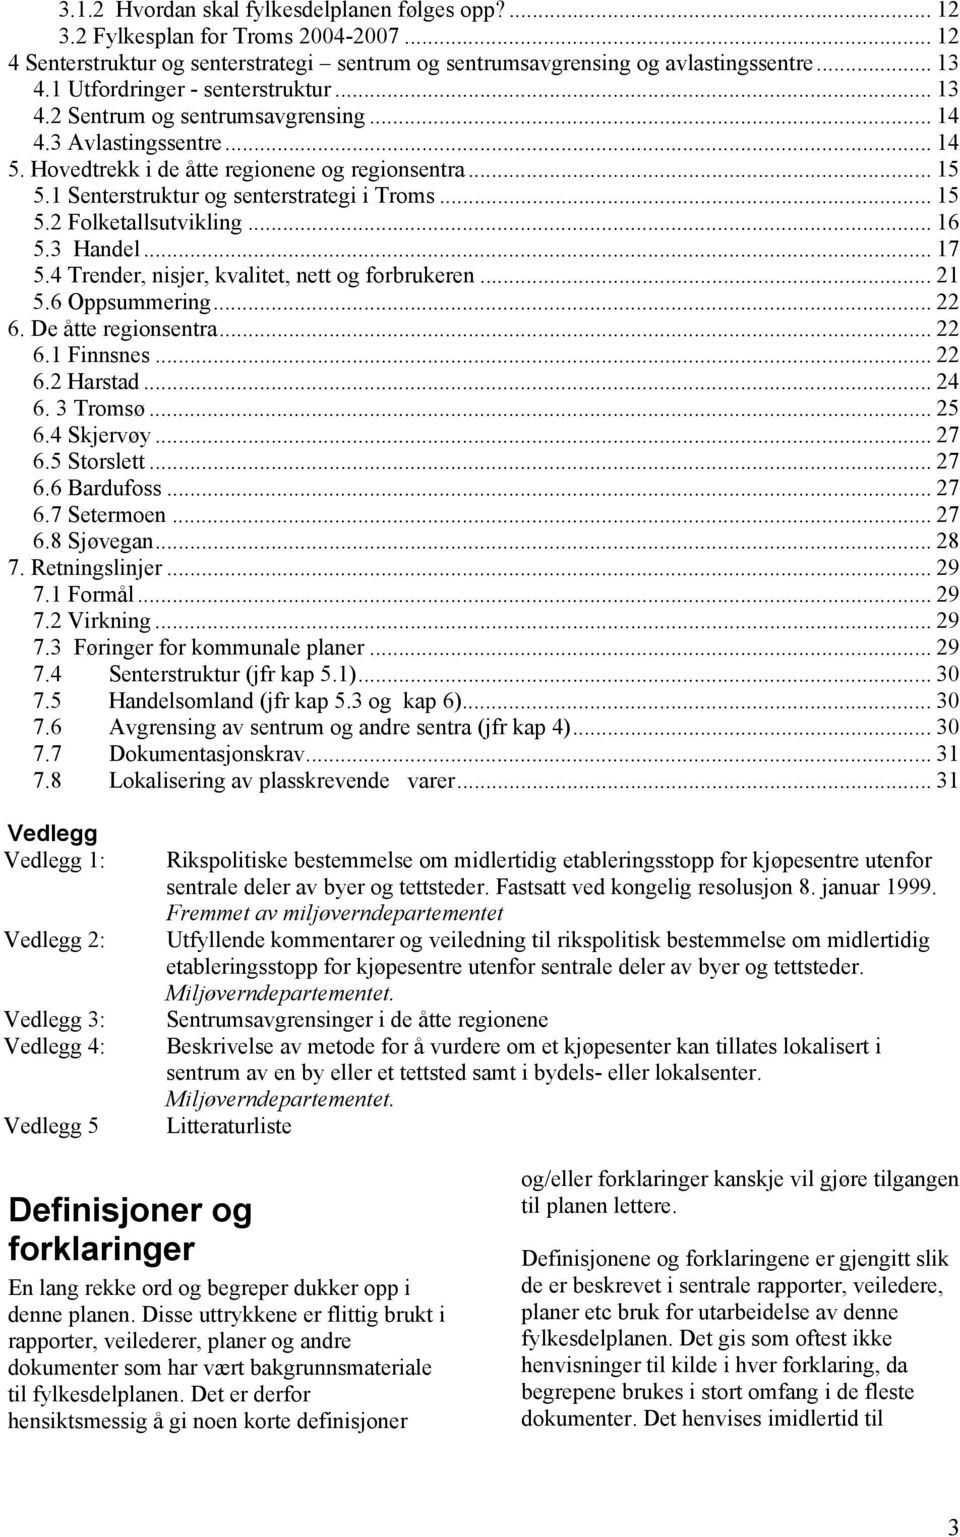 1 Senterstruktur og senterstrategi i Troms... 15 5.2 Folketallsutvikling... 16 5.3 Handel... 17 5.4 Trender, nisjer, kvalitet, nett og forbrukeren... 21 5.6 Oppsummering... 22 6. De åtte regionsentra.